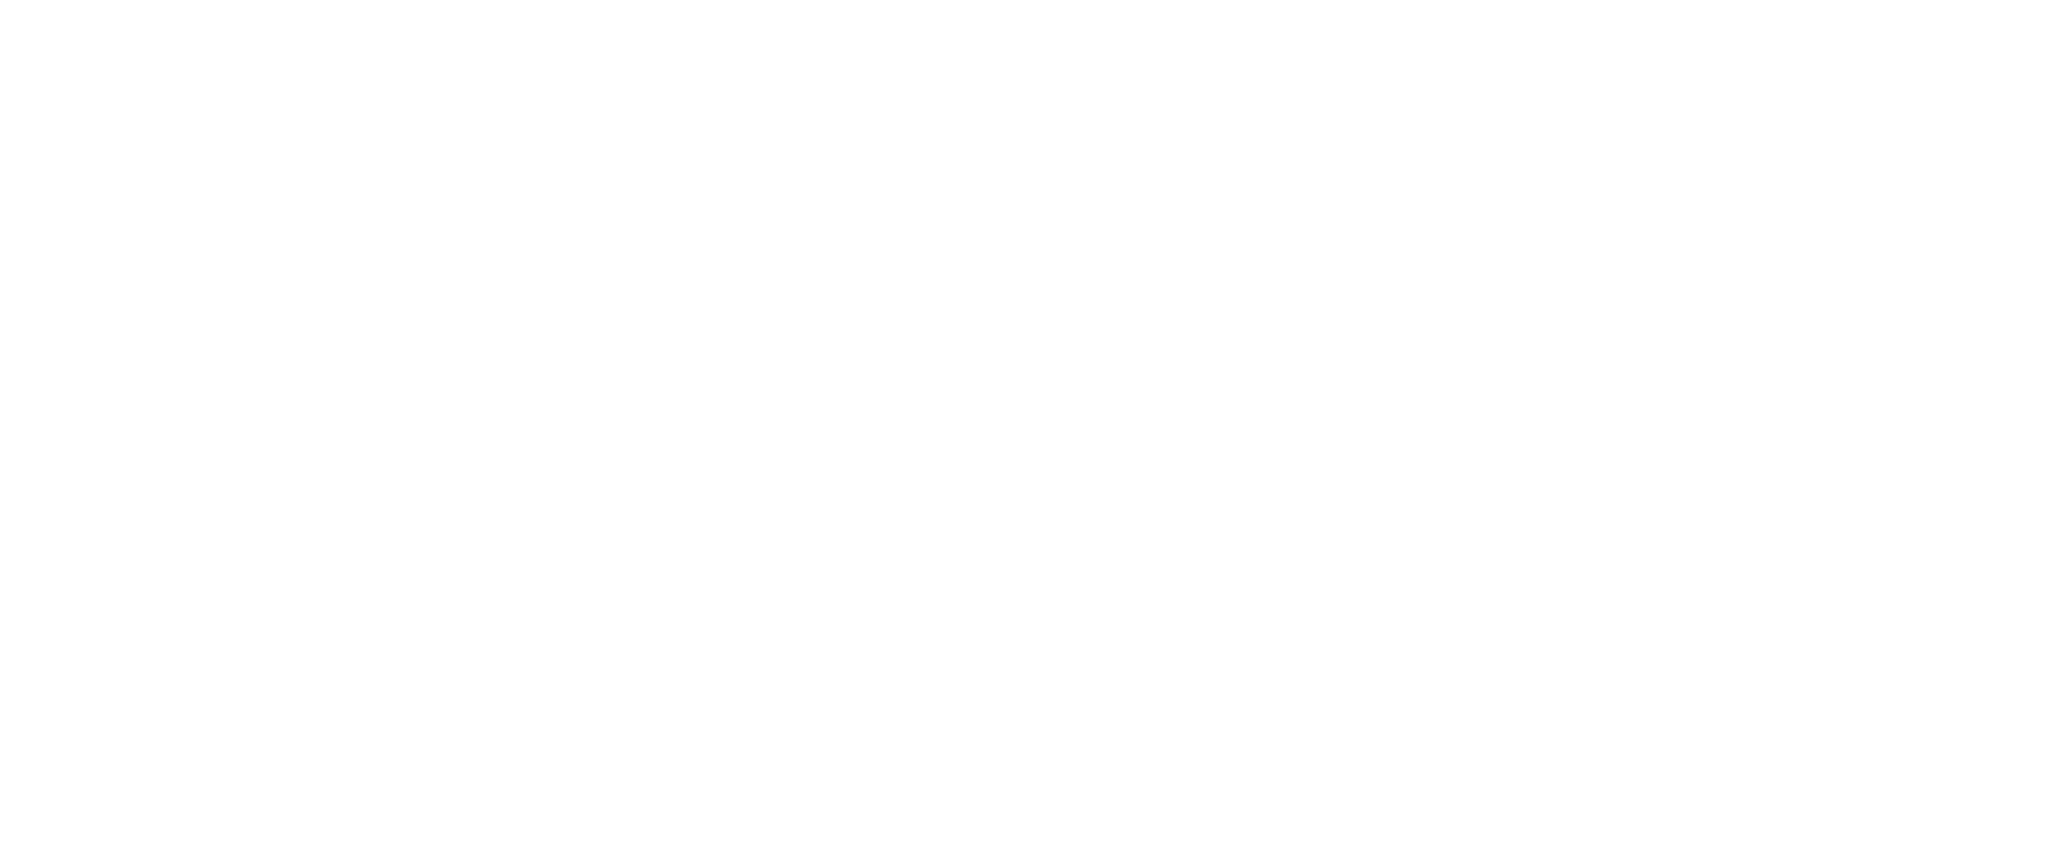 Scoopearth.com